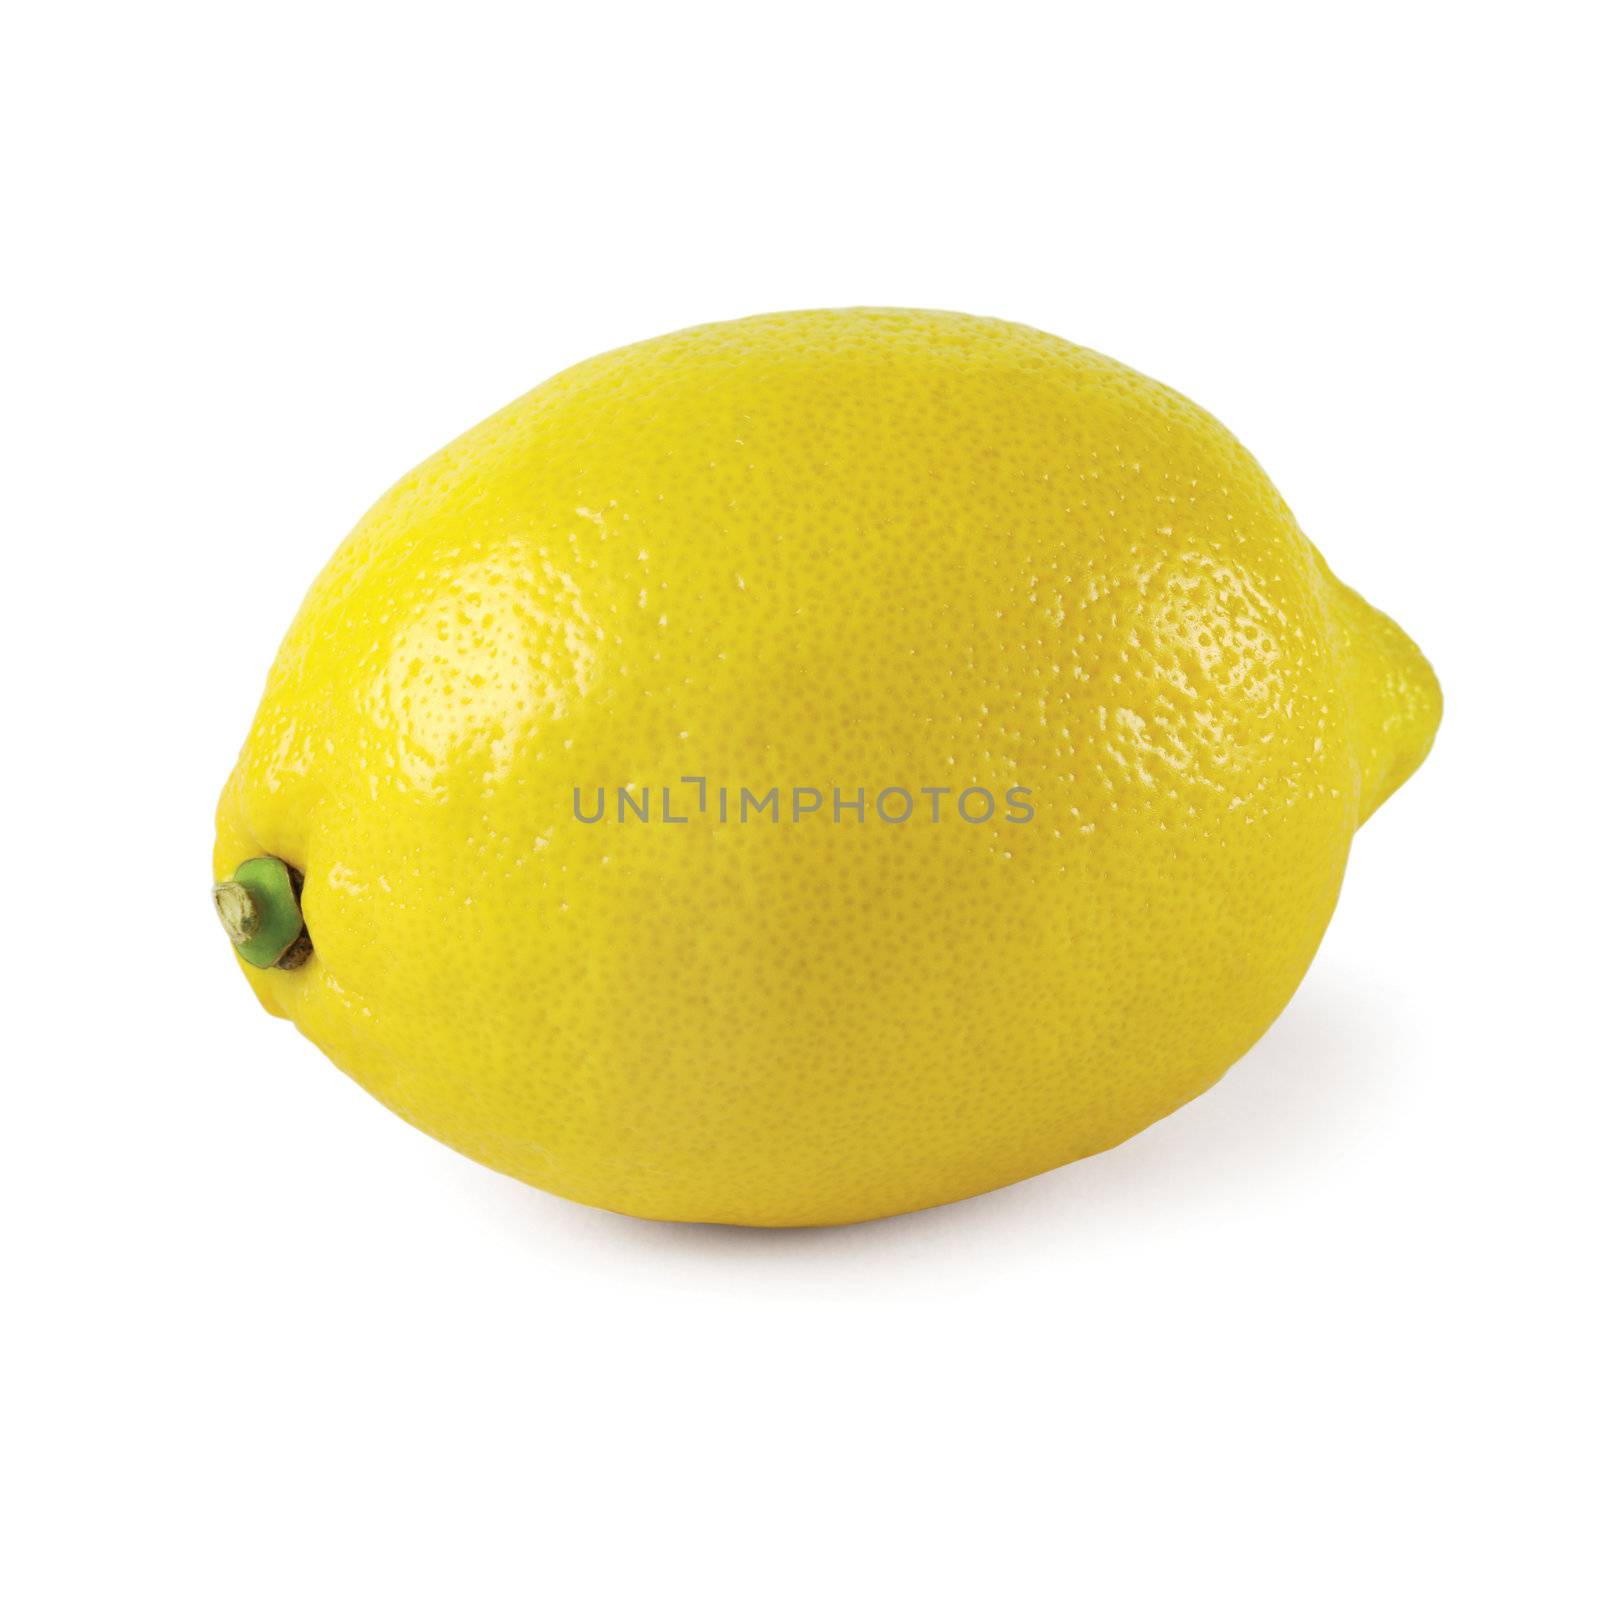 Whole lemon isolated on a white background.
